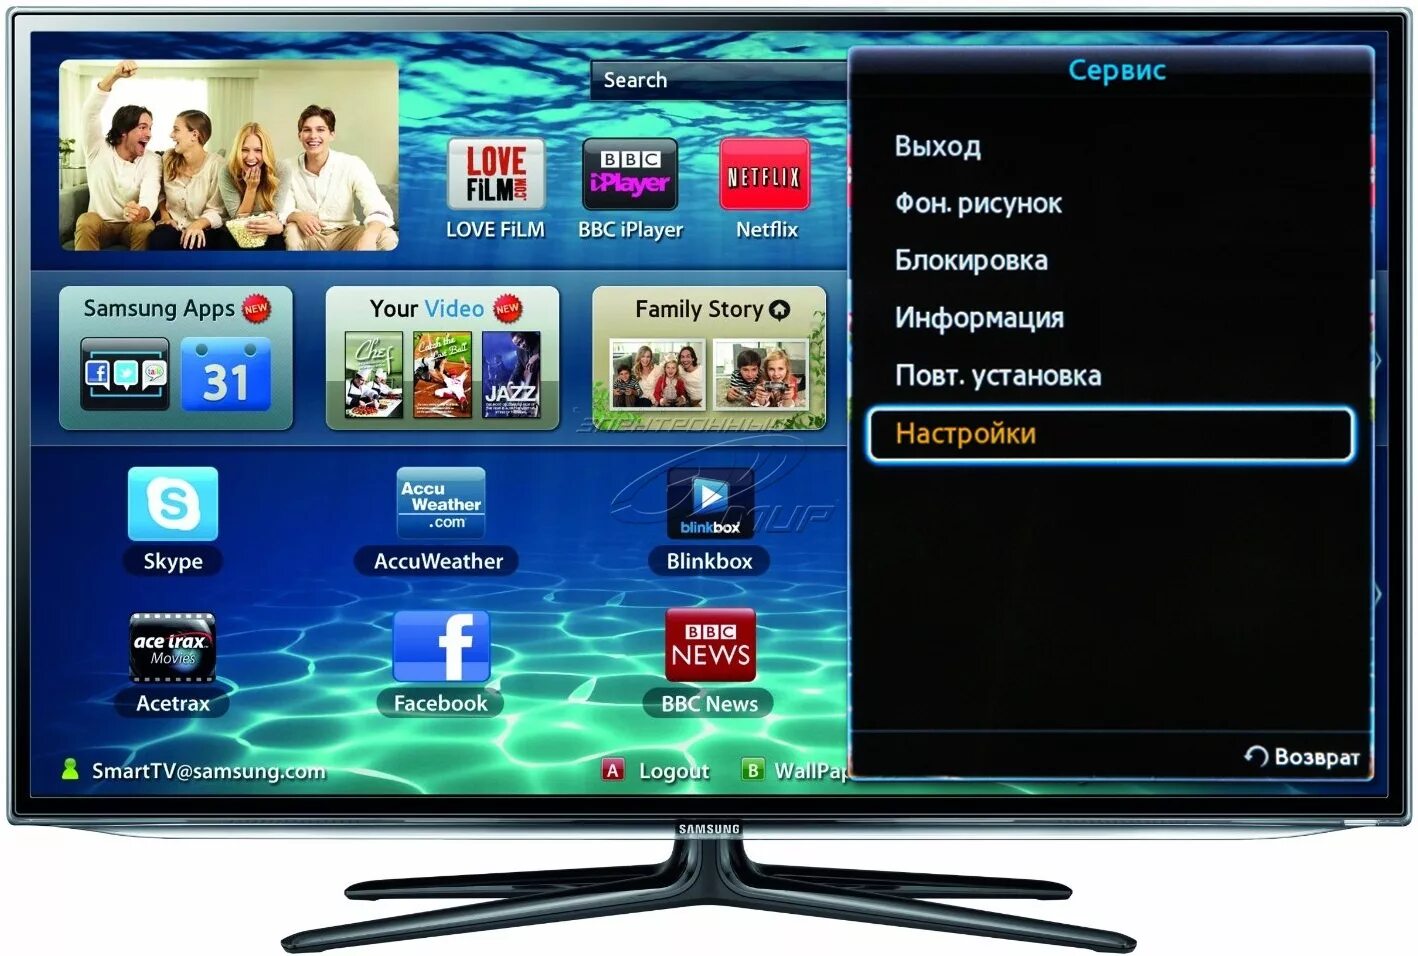 Каналы на телефон без интернета. Как настроить смарт телевизор Samsung. Samsung TV DLNA. Как настроить смарт ТВ на телевизоре самсунг. Самсунг телевизор настройка каналов смарт ТВ.